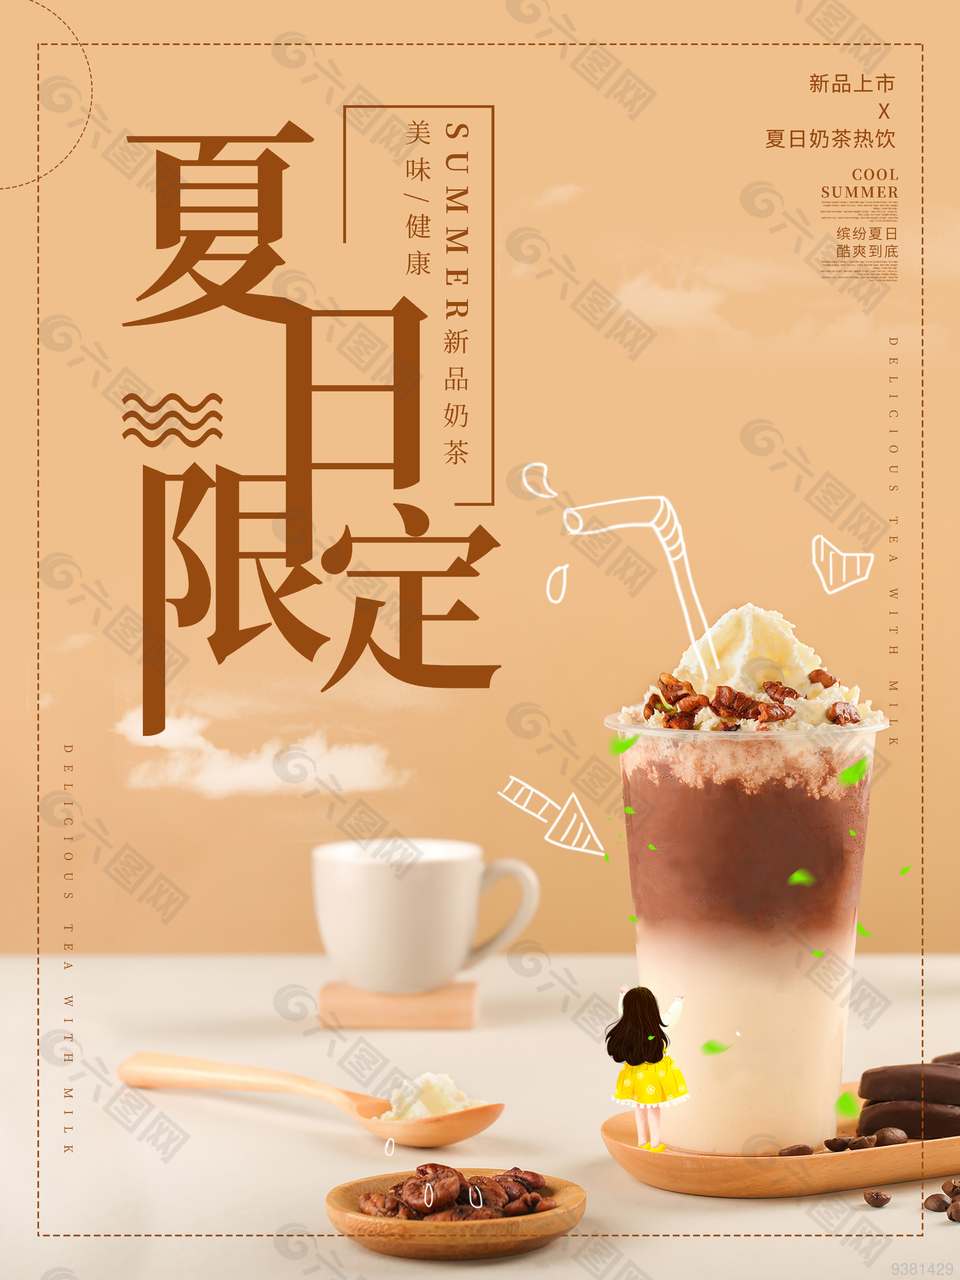 夏日限定奶茶宣传海报